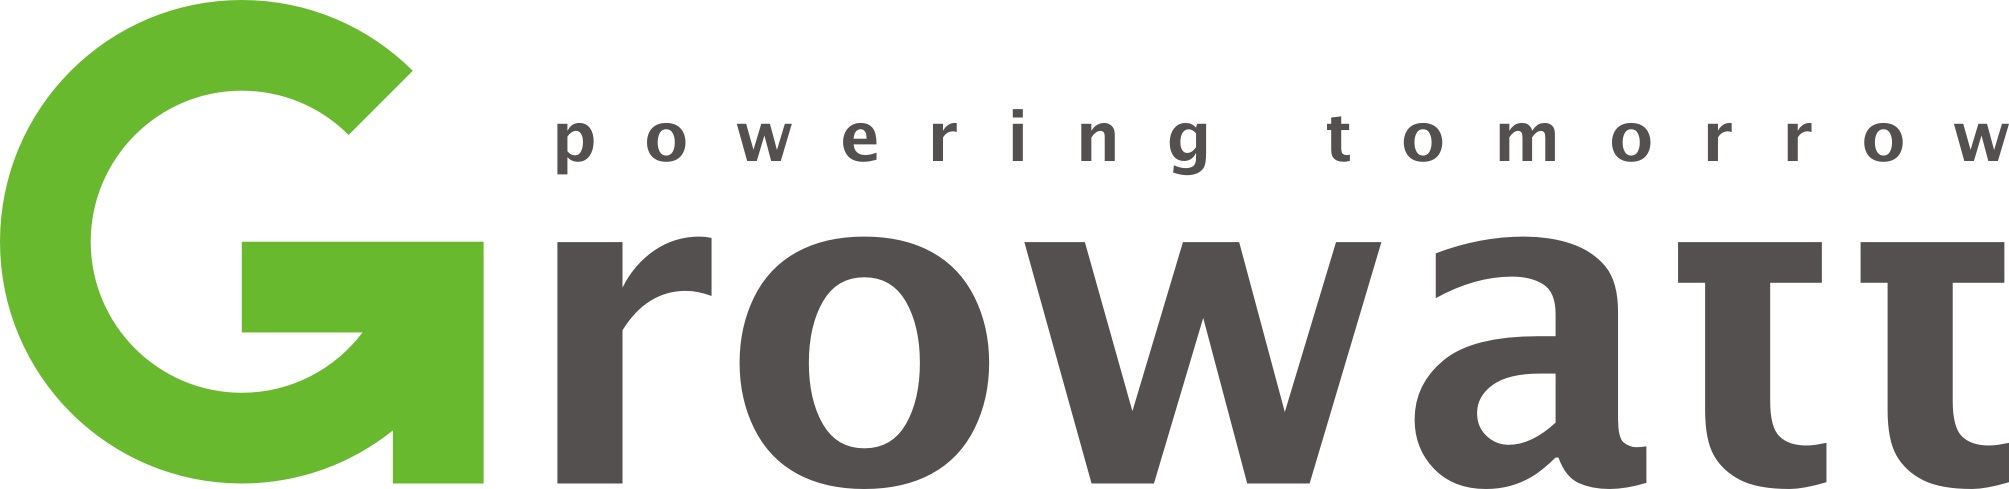 growatt-logo.jpg